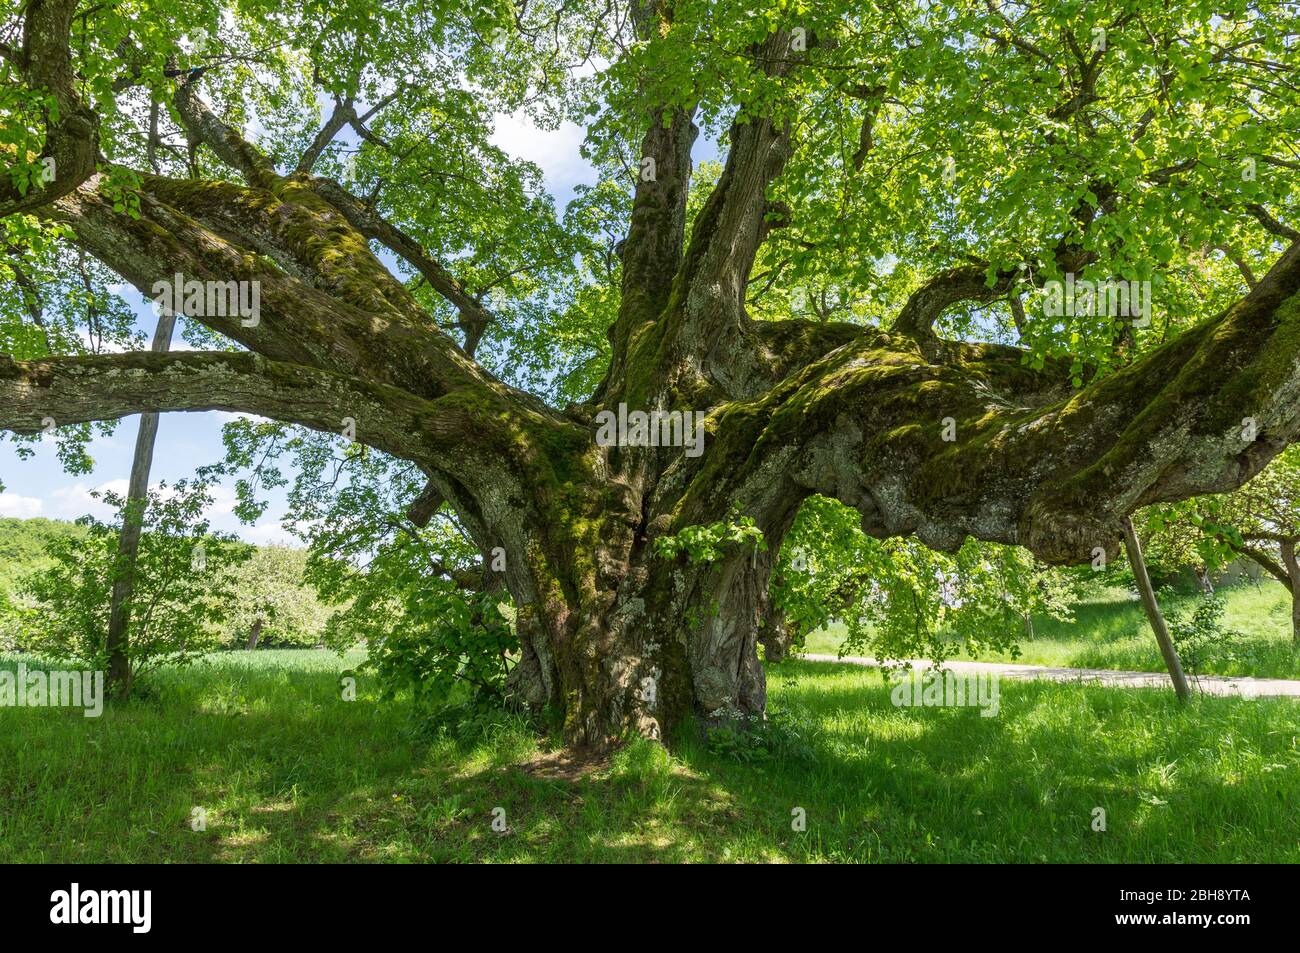 Deutschland, Baden-Württemberg, Bernstadt, die Walkstetter Linde, ein Baumveteran der 430 bis 500 Jahre alt ist. Winterlinde, Tilia cordata Stock Photo